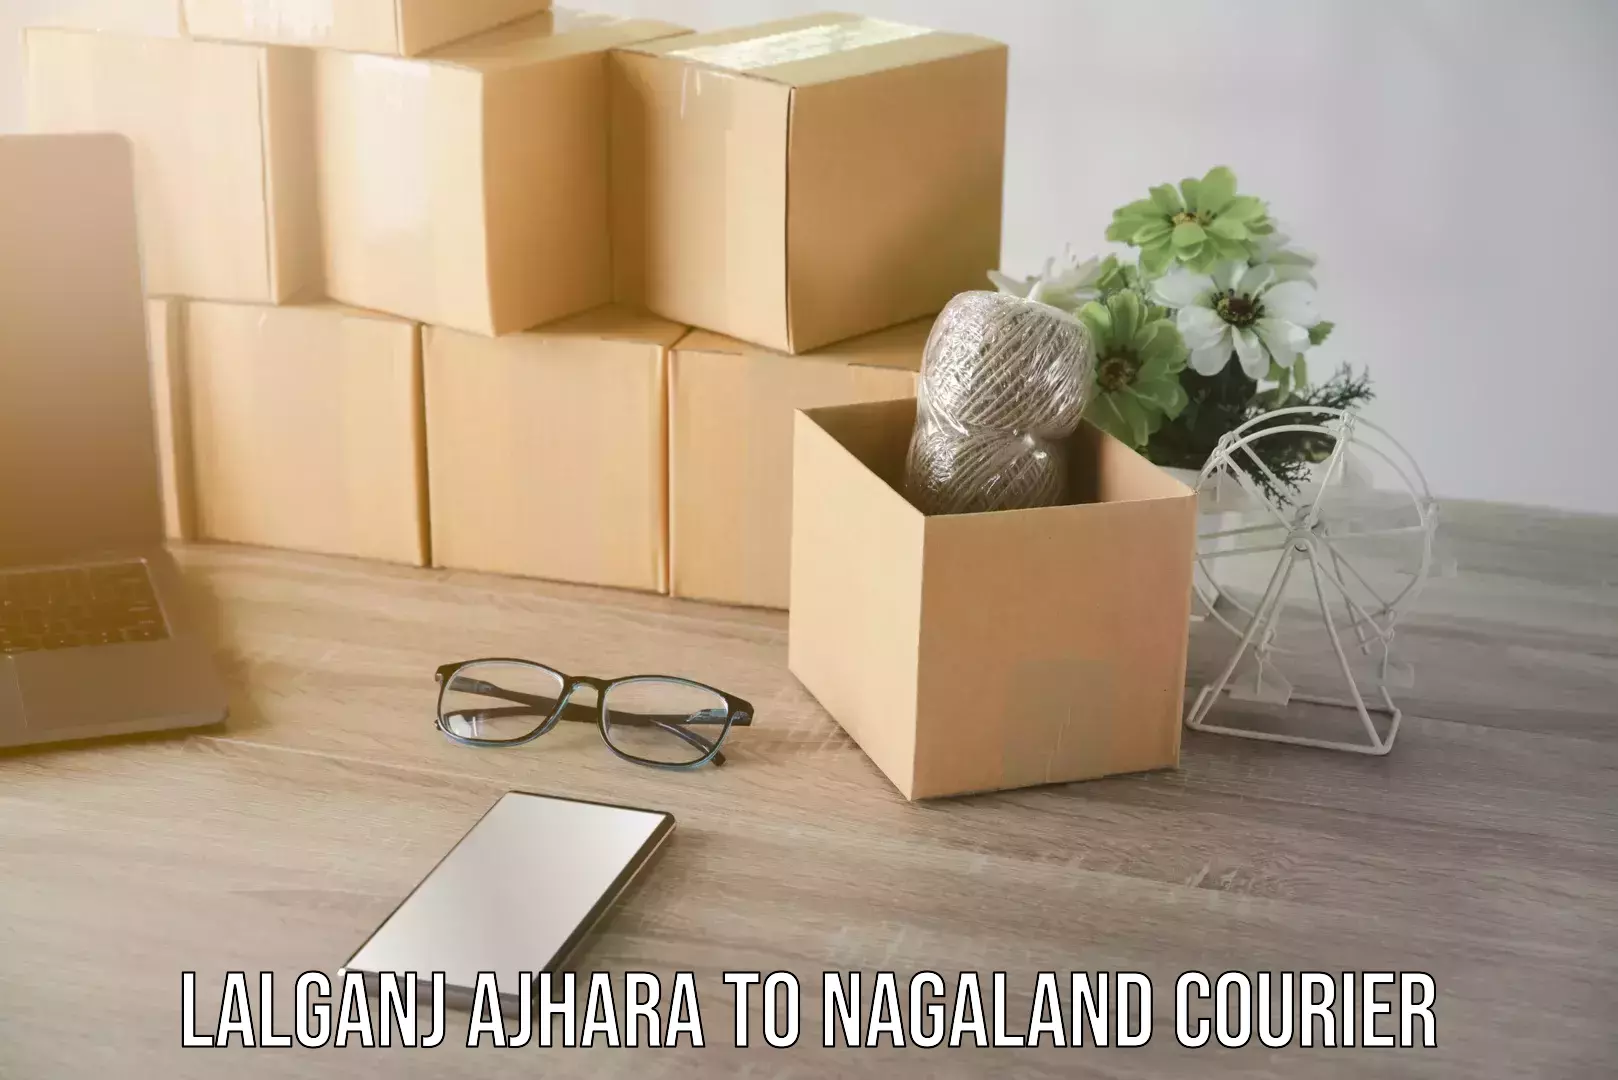 Residential moving experts Lalganj Ajhara to Nagaland